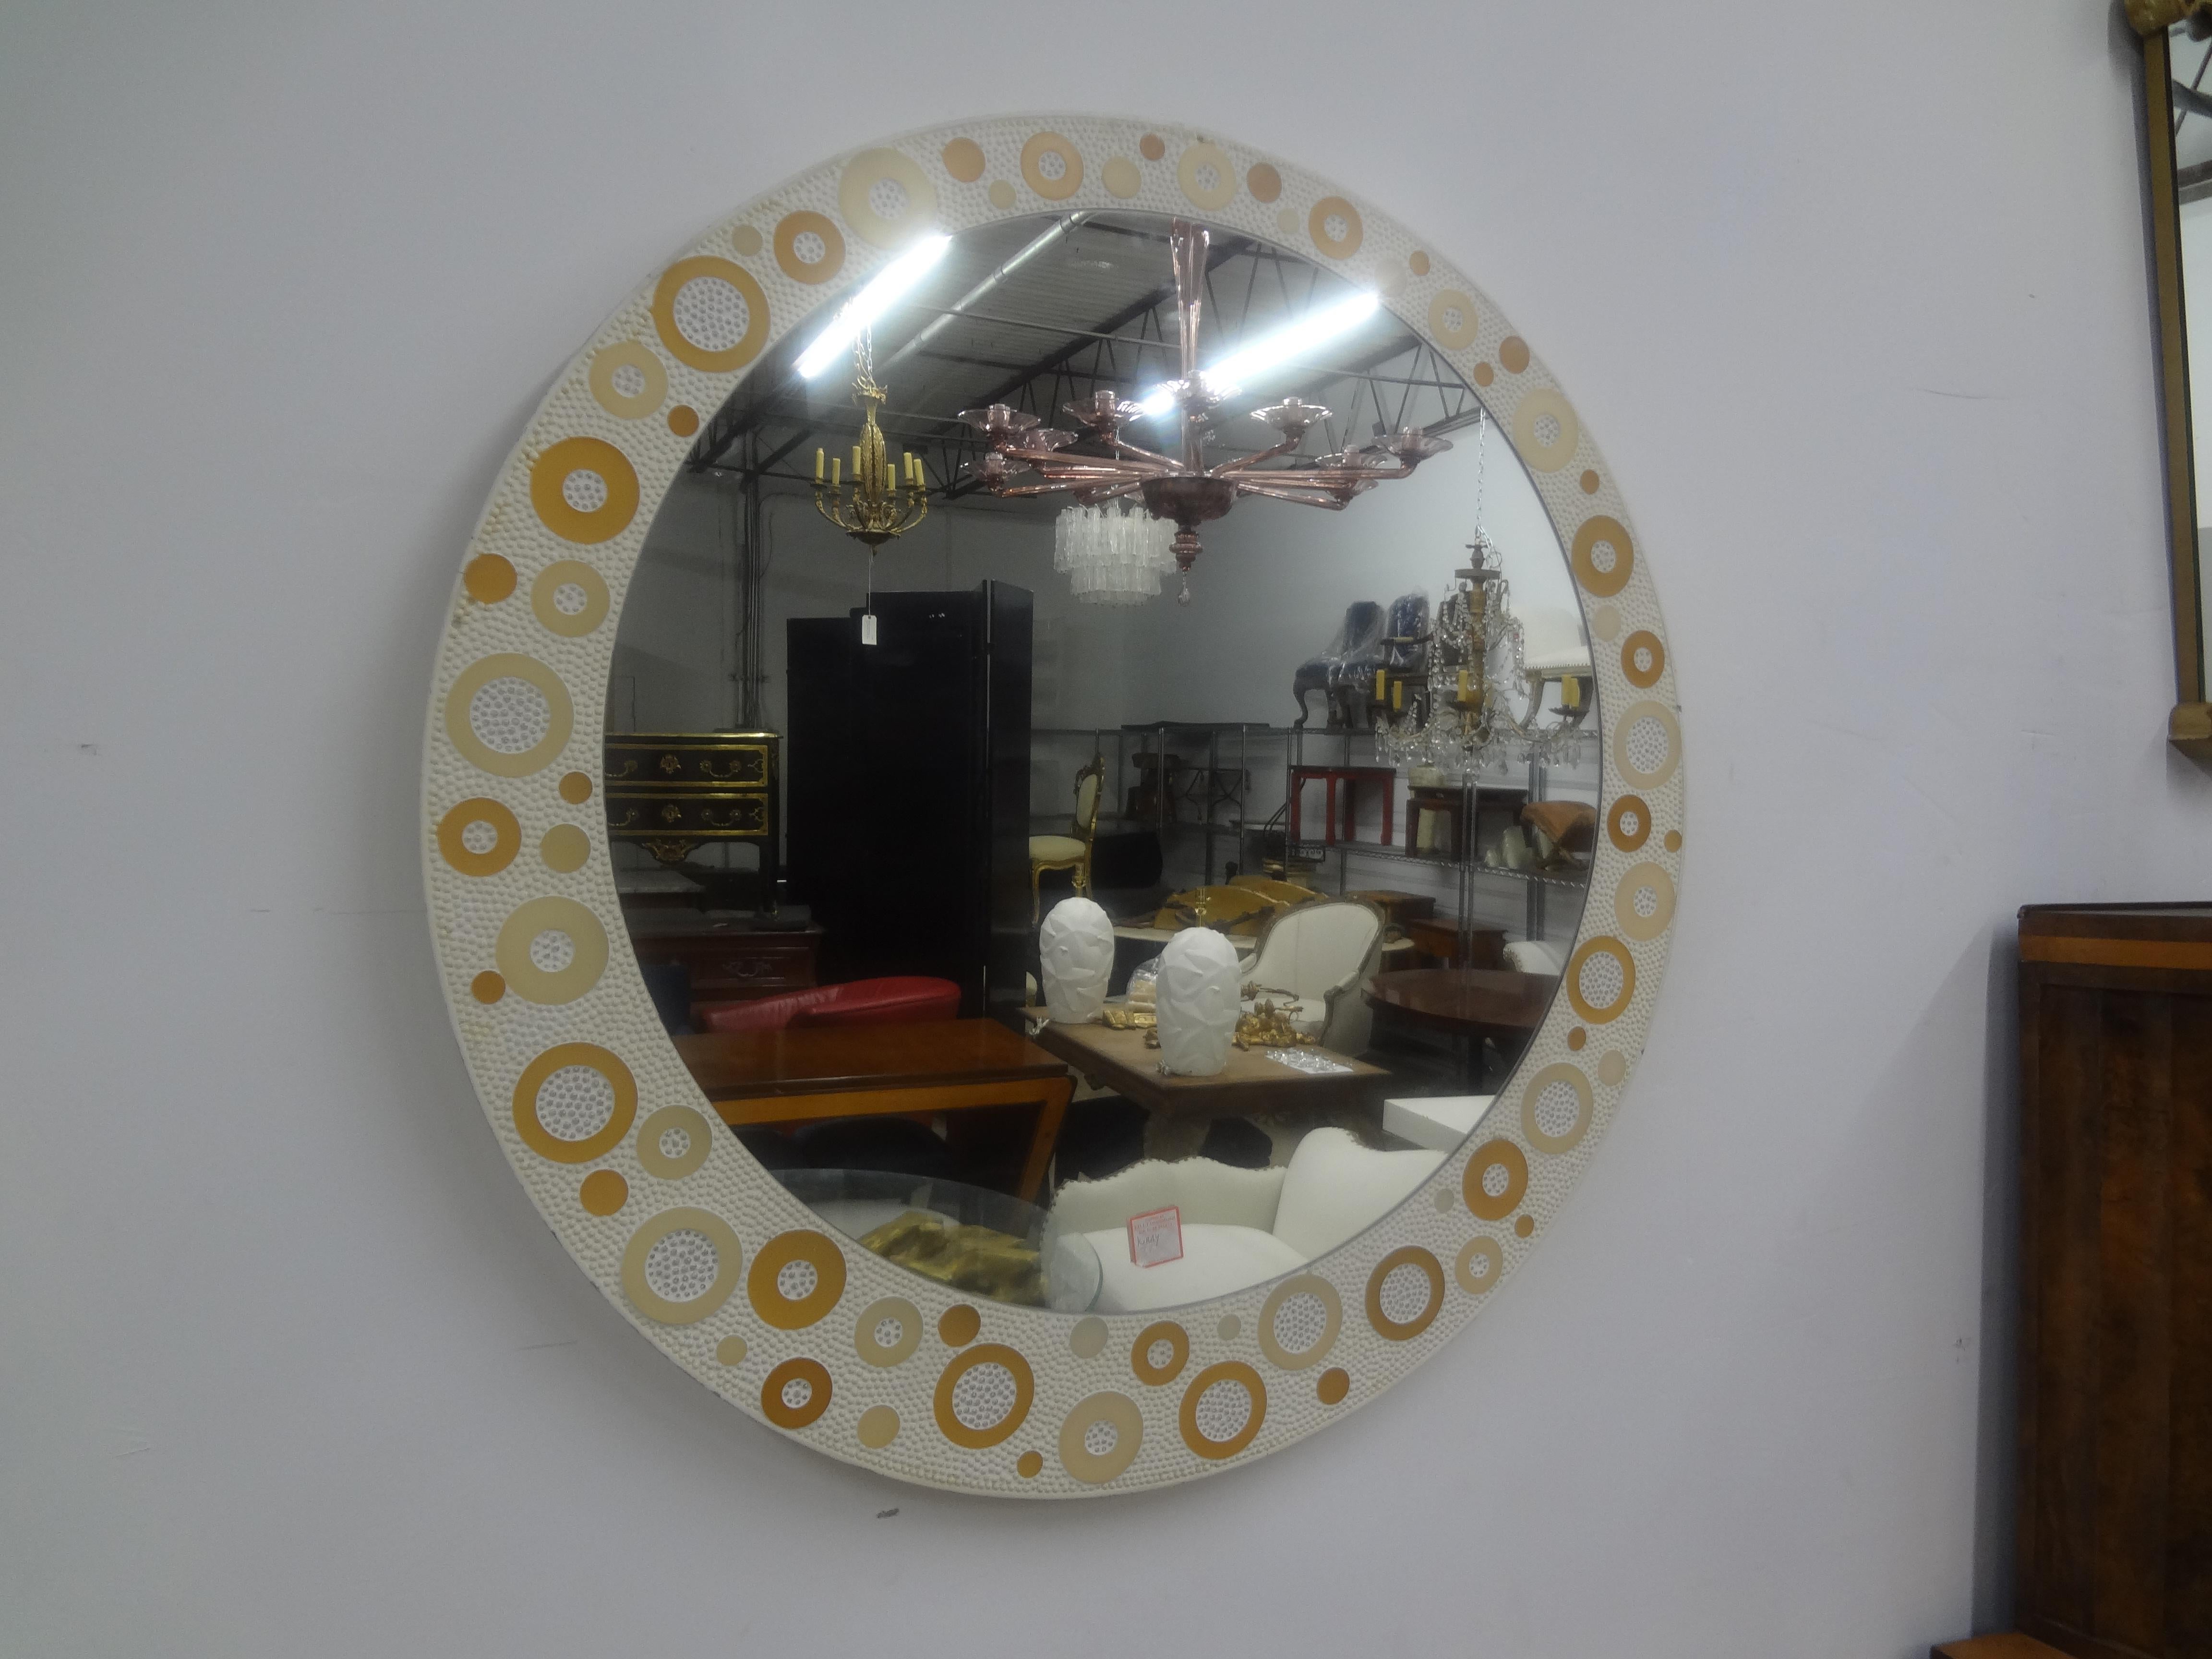 Italienischer Mid Century Modern-Spiegel.
Dieser ungewöhnlich große runde italienische Spiegel (39,5 Zoll)  hat einen cremefarbenen Hintergrund mit einem interessanten Muster aus abwechselnden Kreisen in neutralen Tönen.
Großartiges italienisches